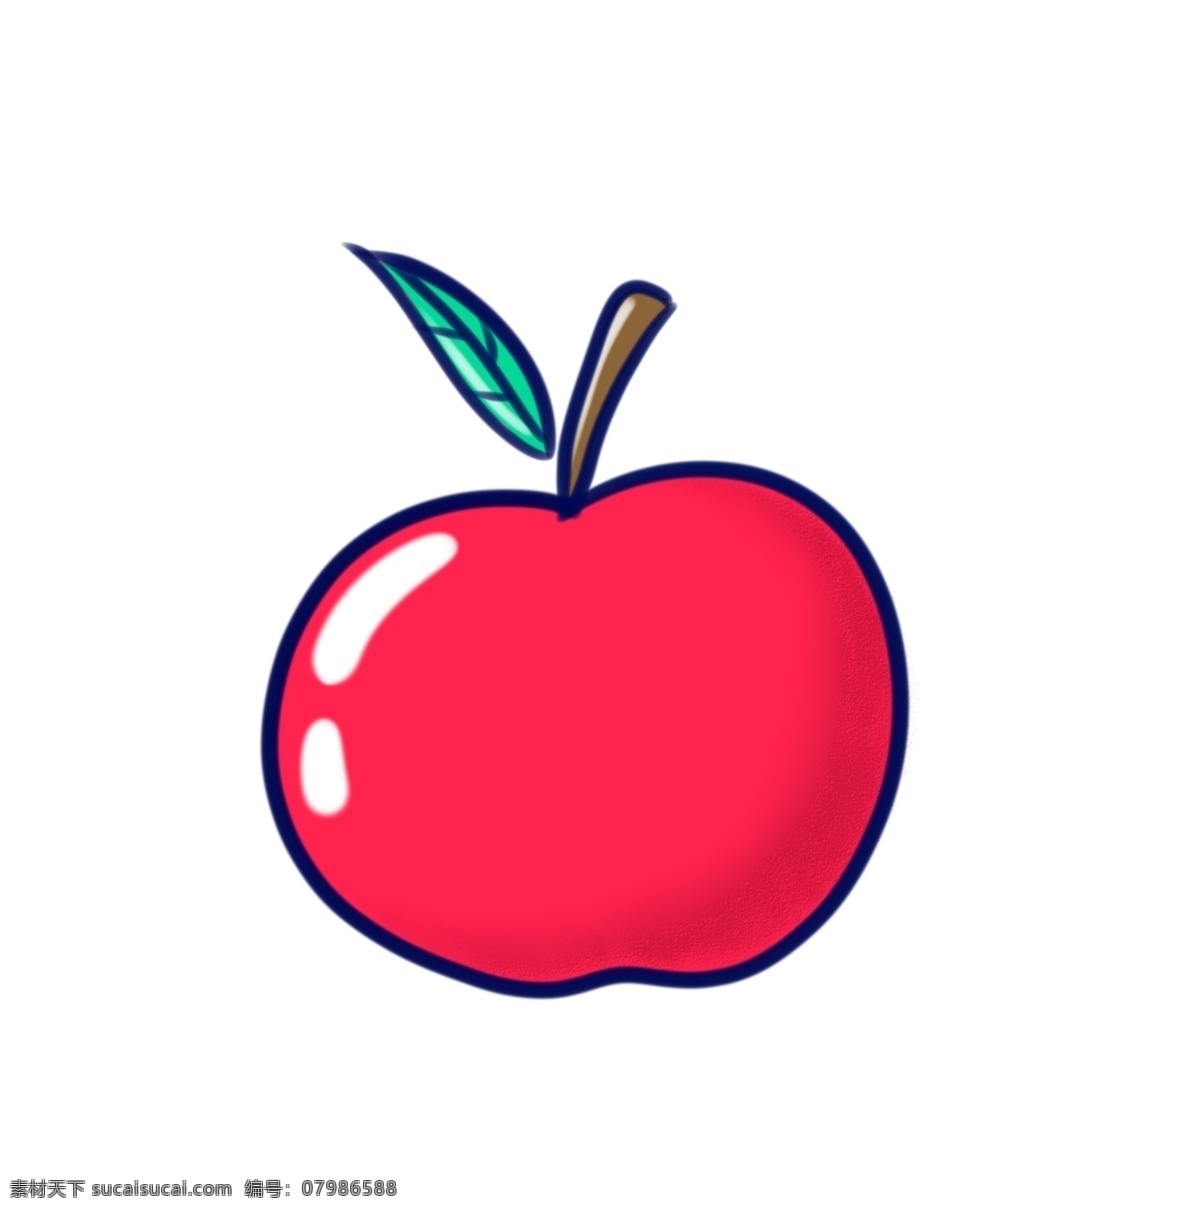 卡通 红苹果 素材图片 苹果 卡通苹果 矢量卡通苹果 手绘苹果 矢量手绘苹果 苹果素材 卡通水果 手绘水果 矢量水果 矢量卡通水果 矢量手绘水果 卡通水果素材 设 生物世界 水果